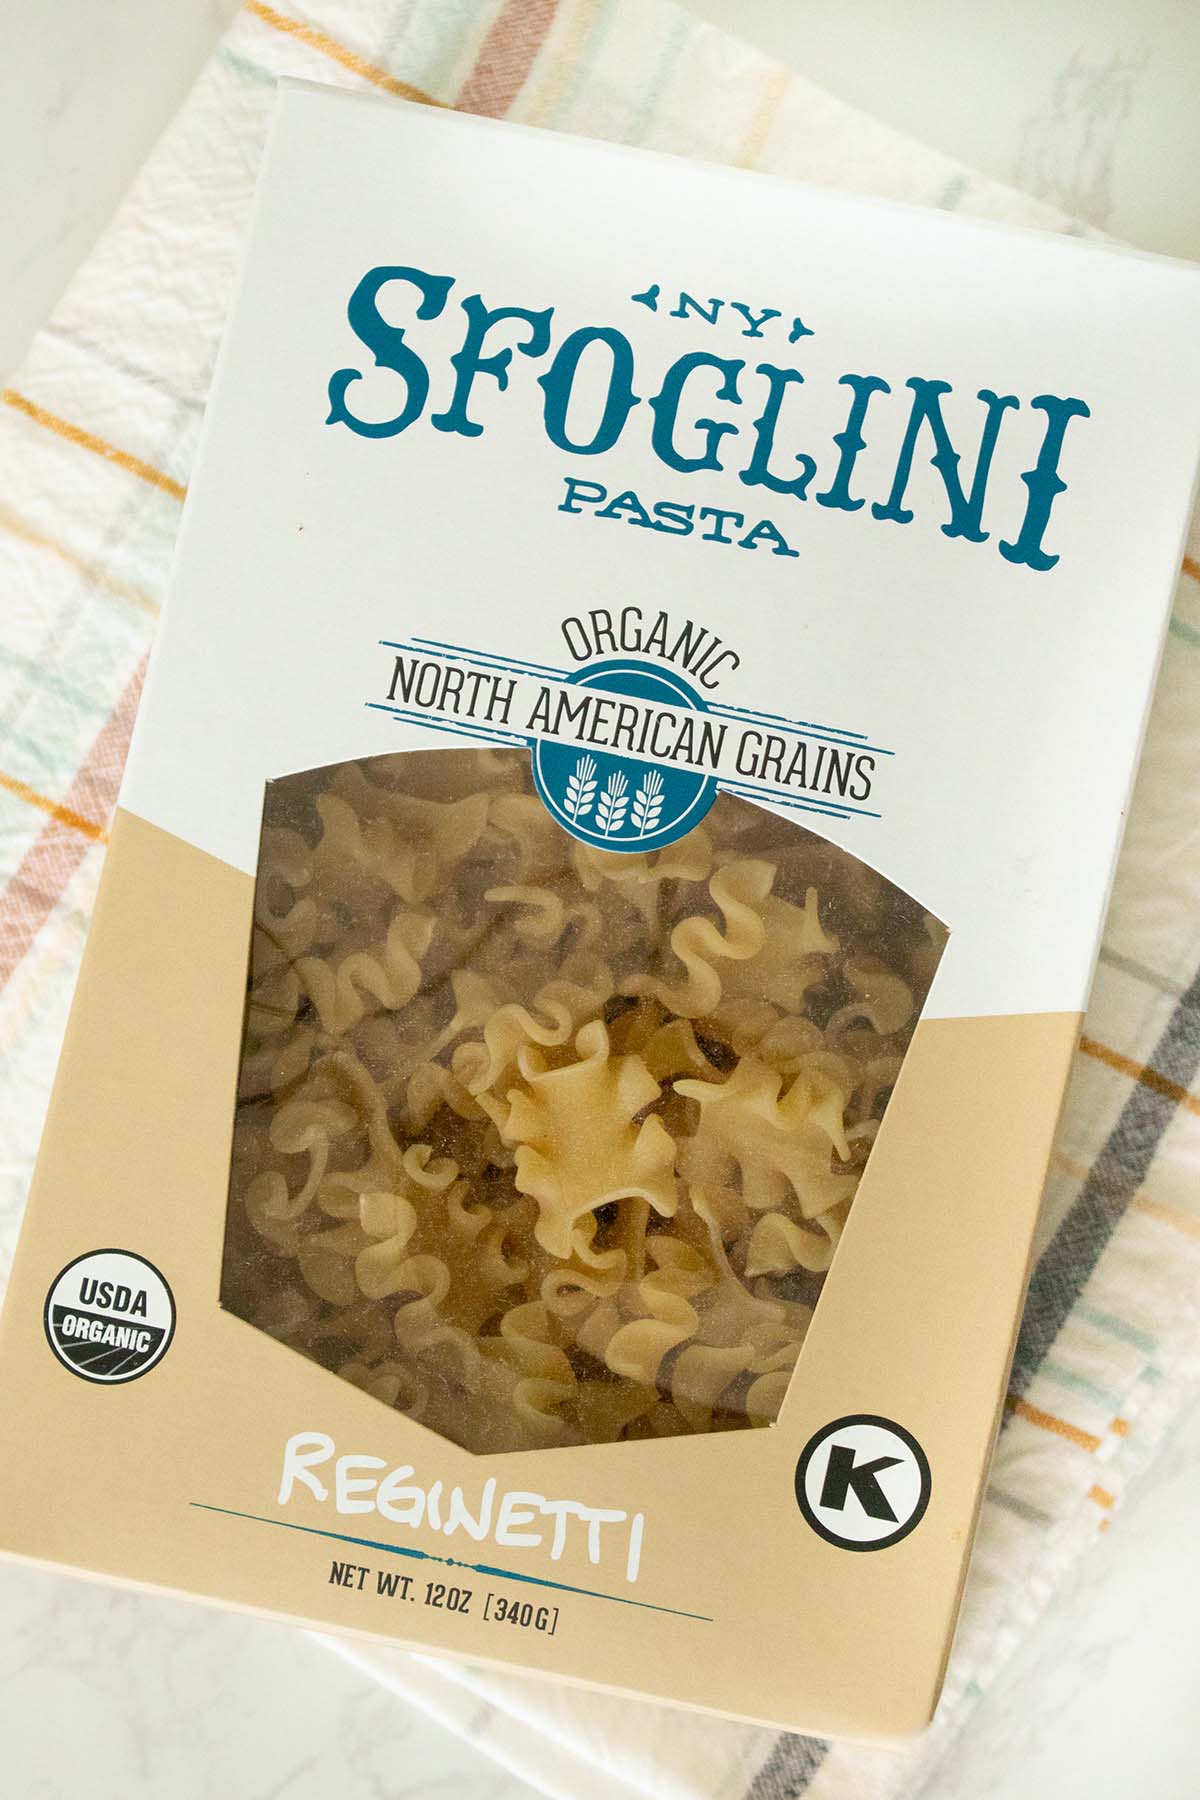 box of Sfoglini Reginetti pasta on a white table